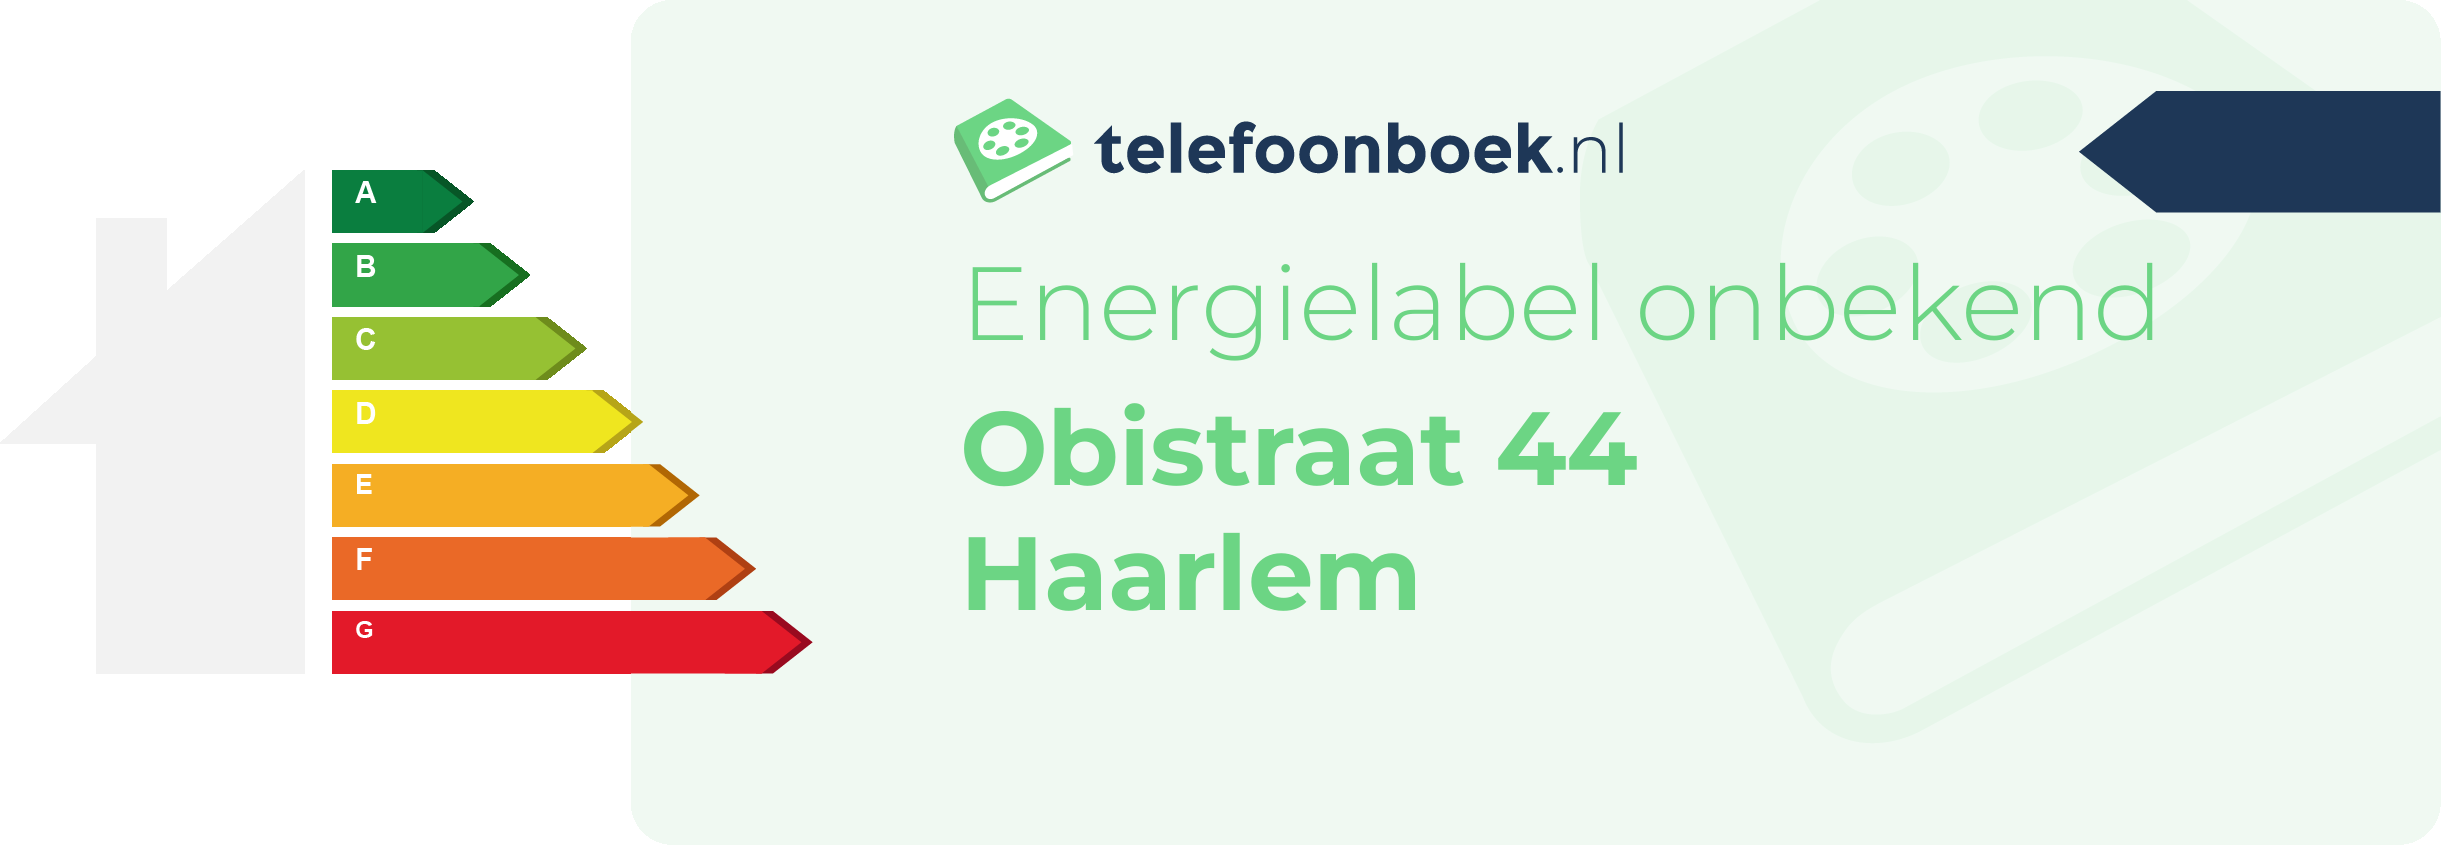 Energielabel Obistraat 44 Haarlem